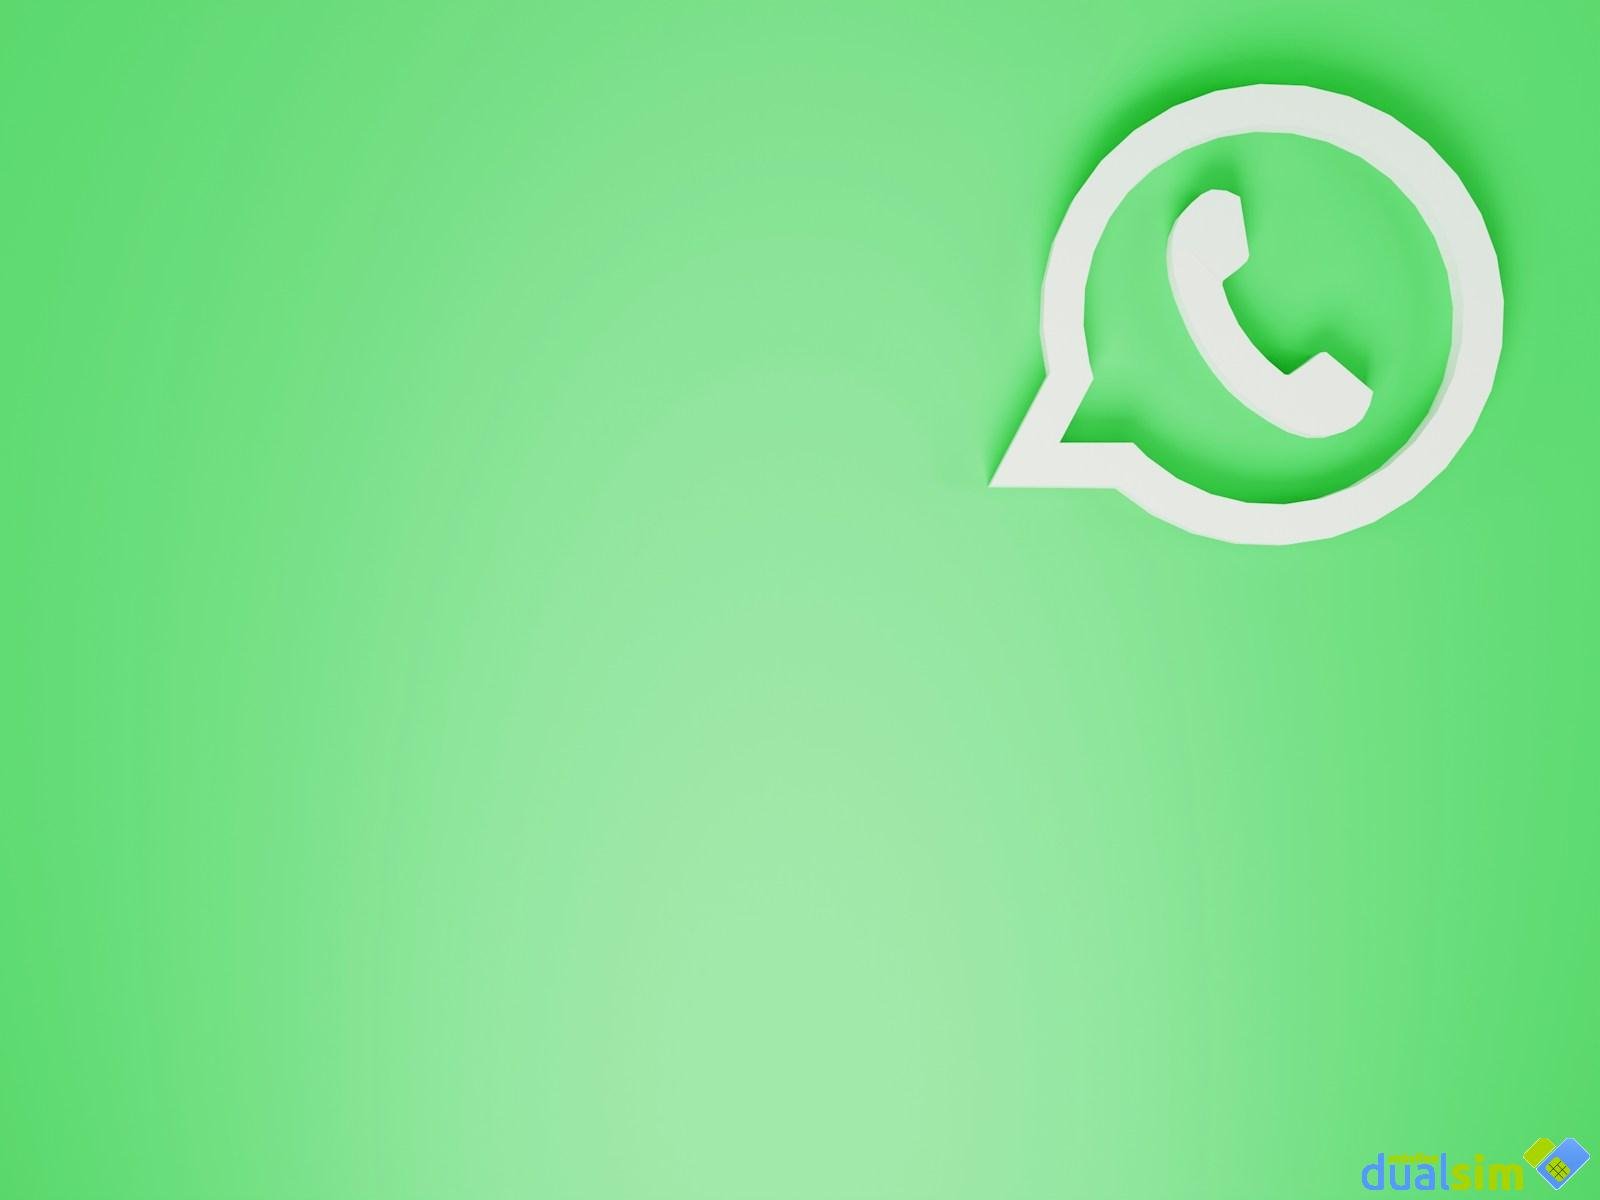 WhatsApp permitirá a los usuarios crear y compartir imágenes generadas mediante IA